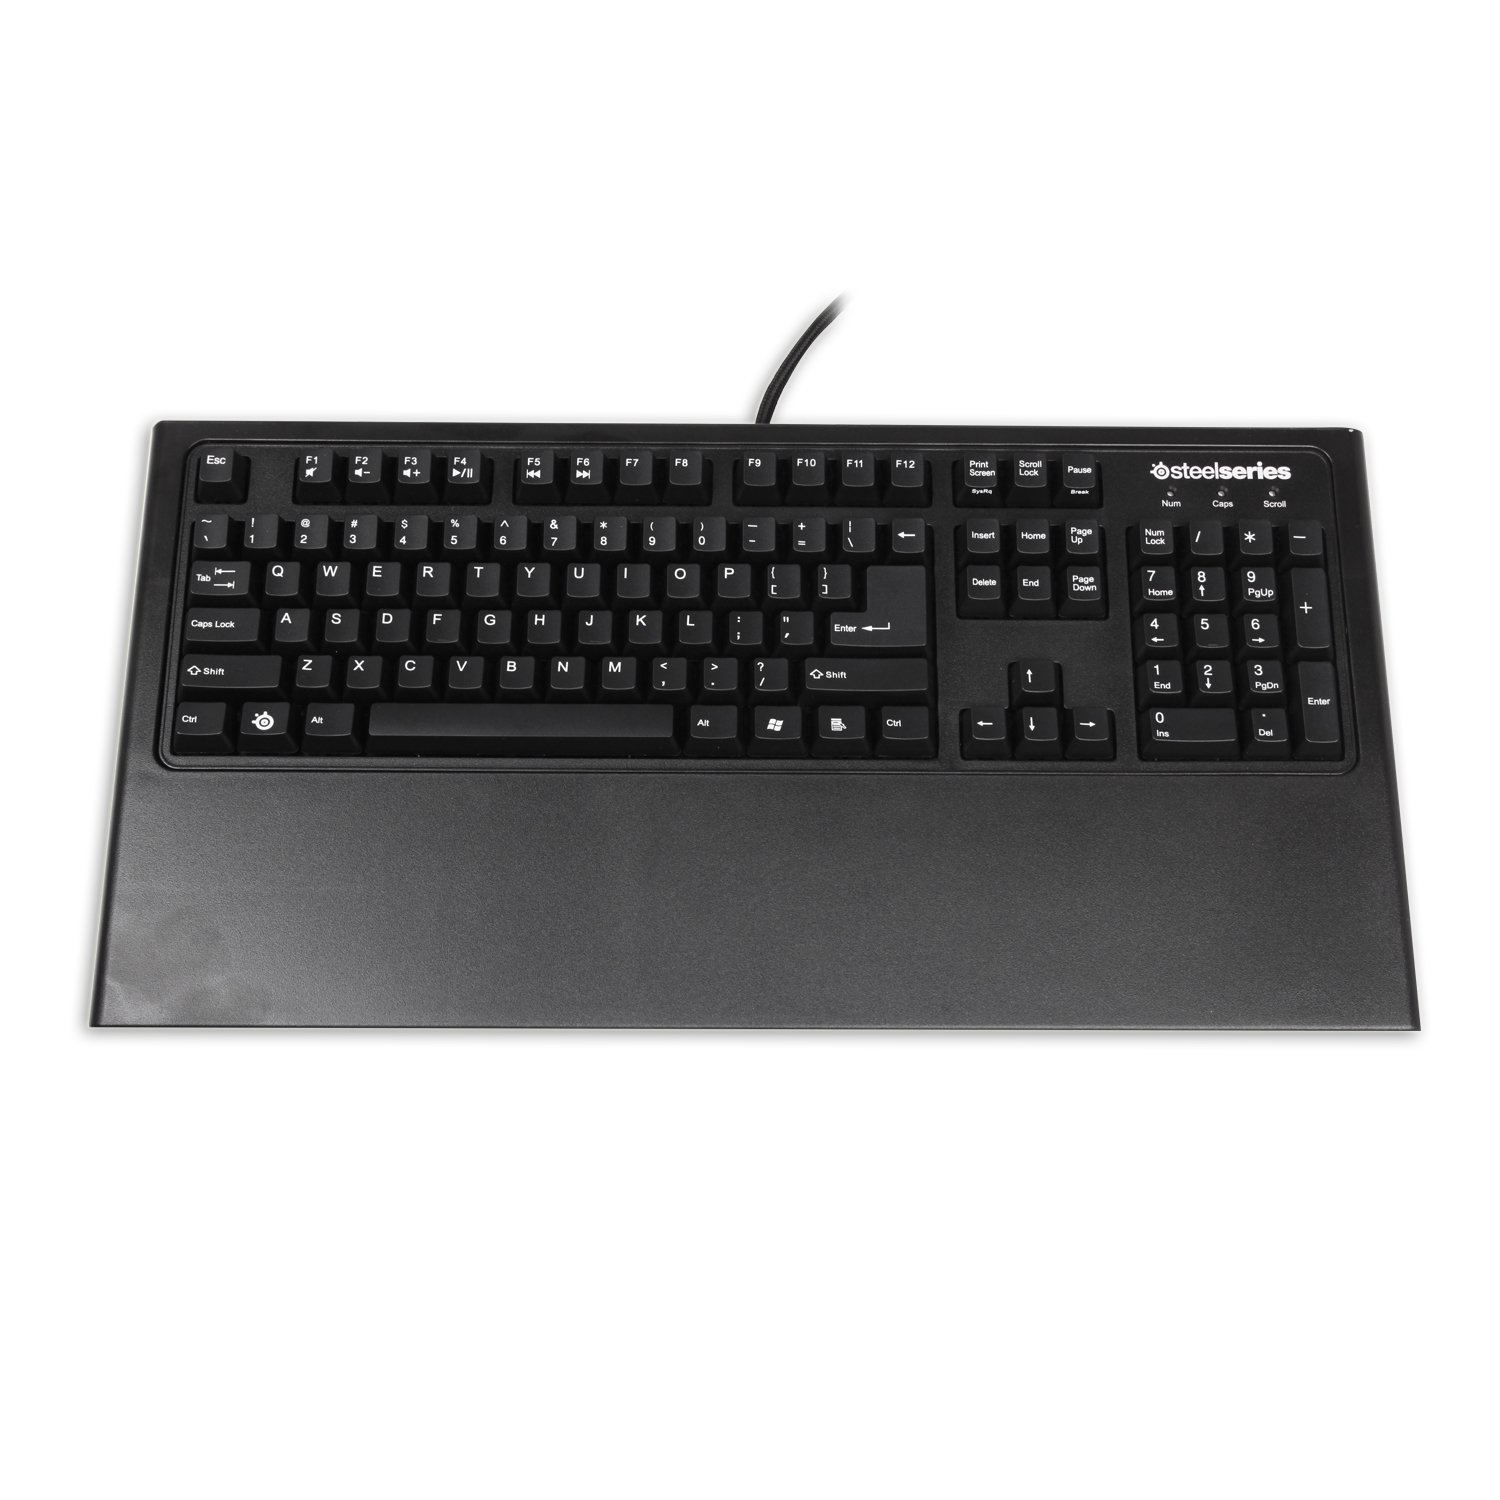 Best gaming keyboards money can buy: Steelseries 7G Gaming Keyboard